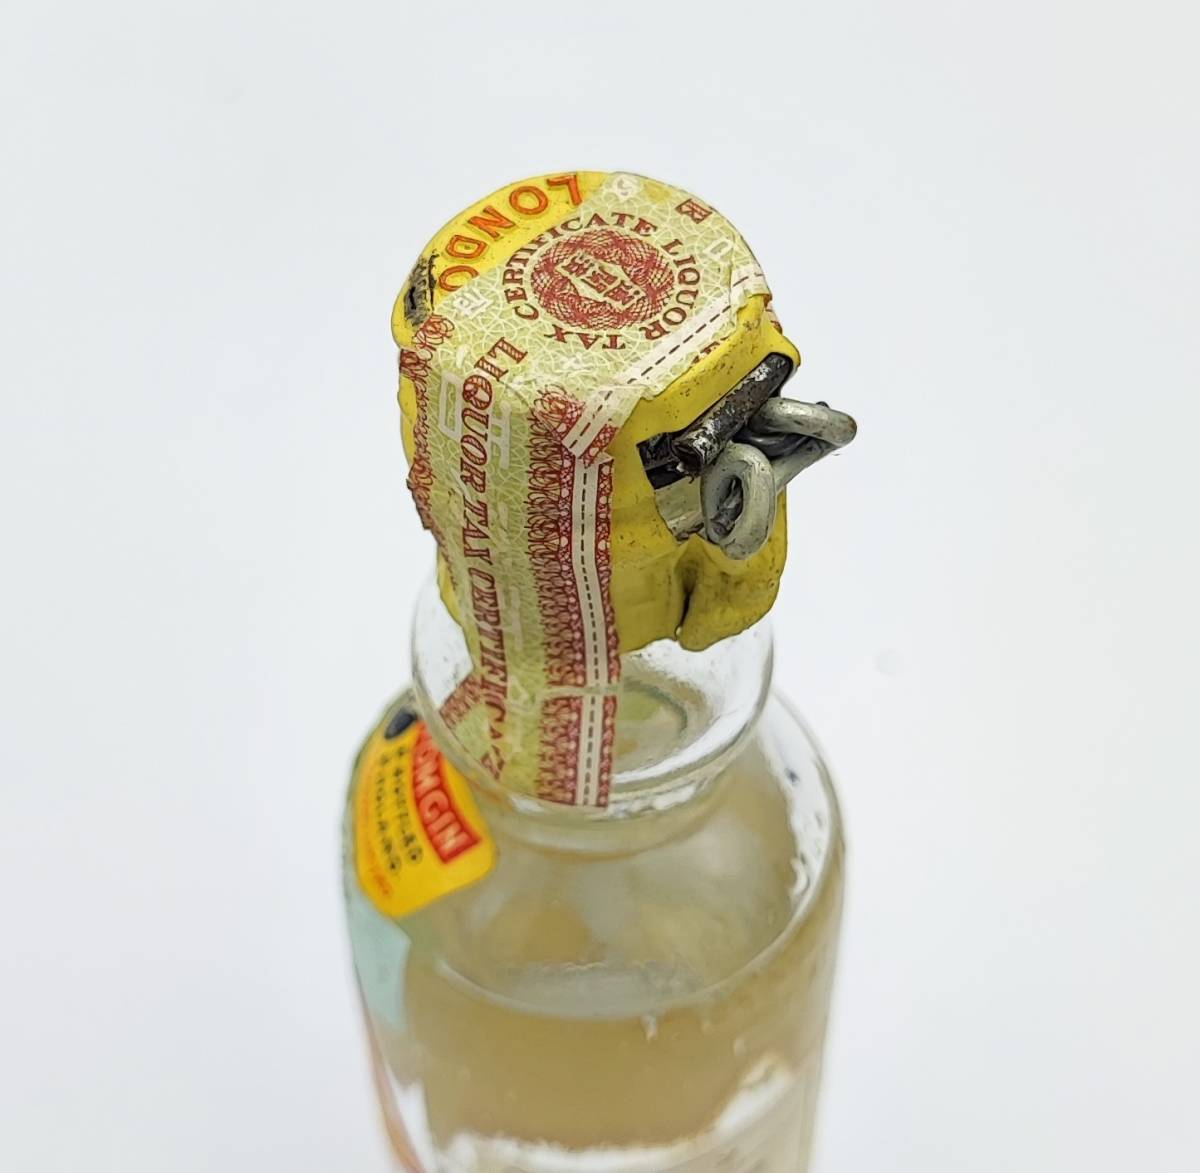 【全国送料無料】雑酒 GORDON'S SPECIAL OLD TOM GIN TIN CAP　エキス分0度　47.3度　47ml 【ゴードン オールドトム ジン ティンキャップ】